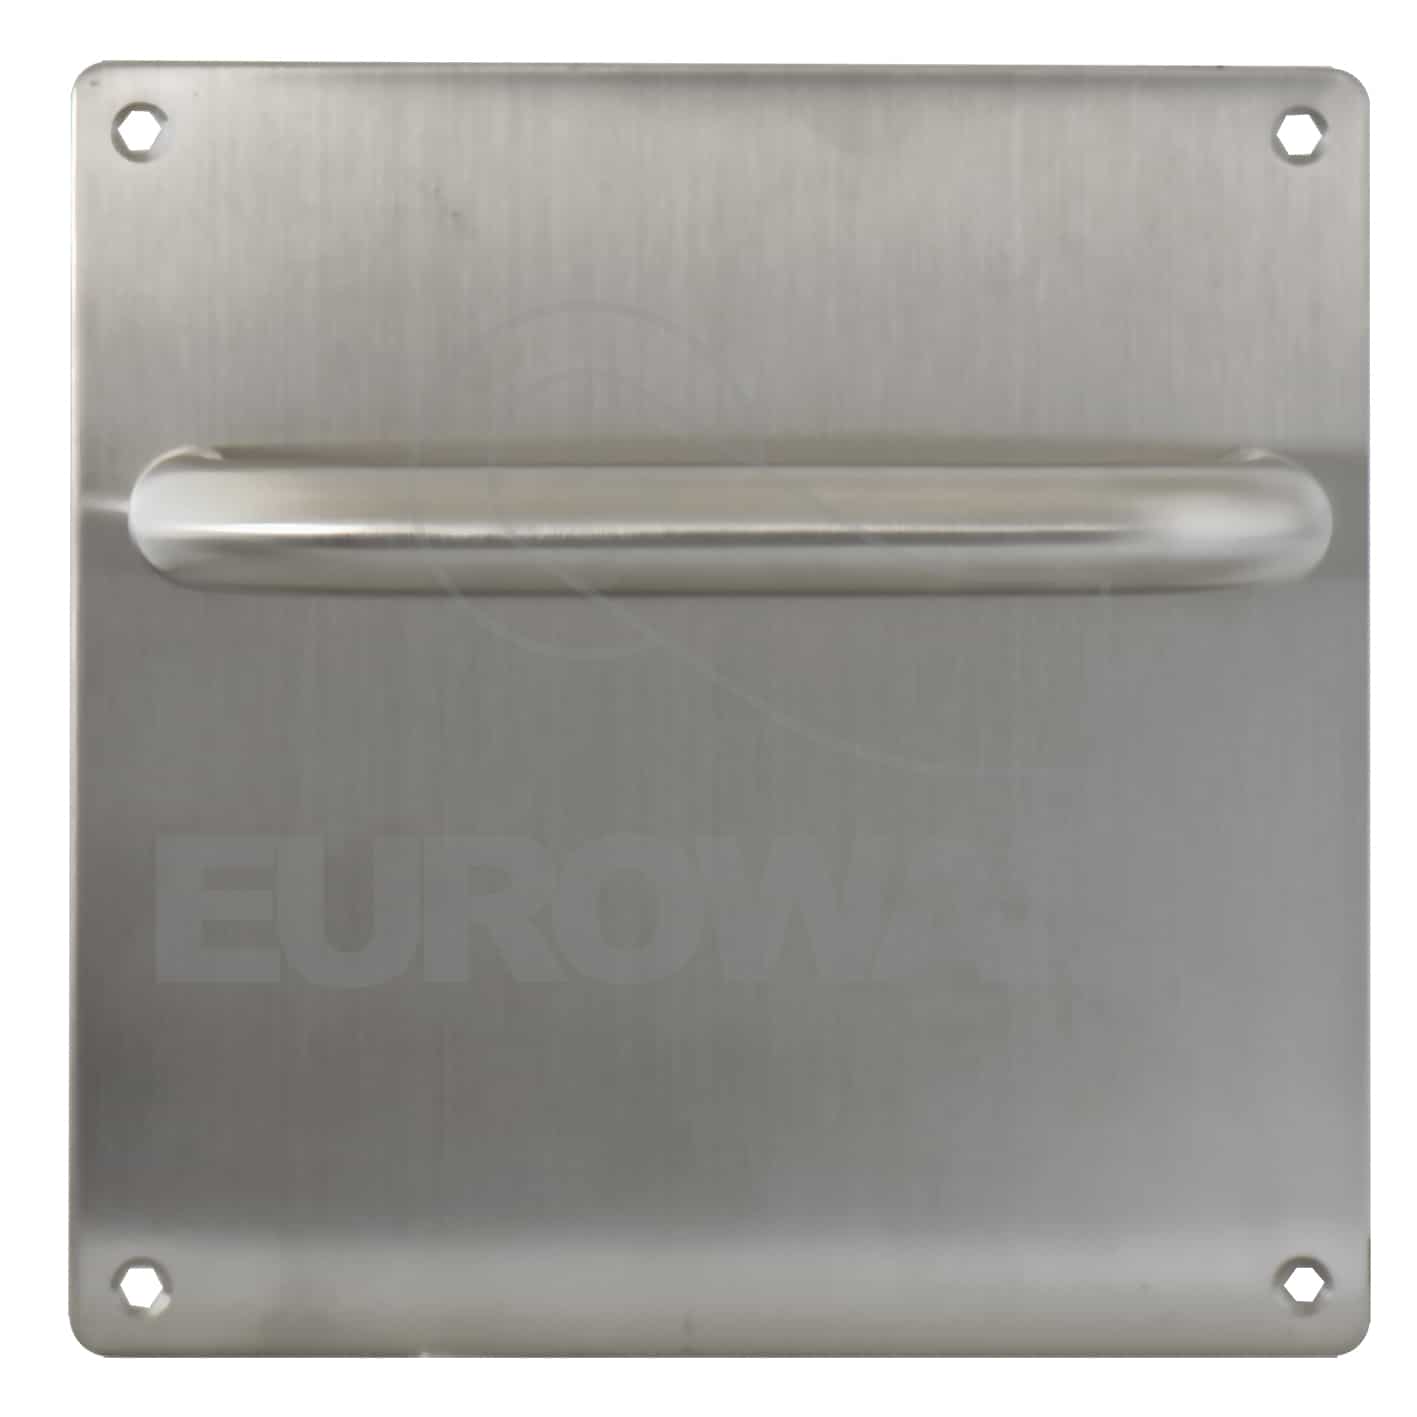 Plaque rectangle avec poignée fixe - EUROWALE